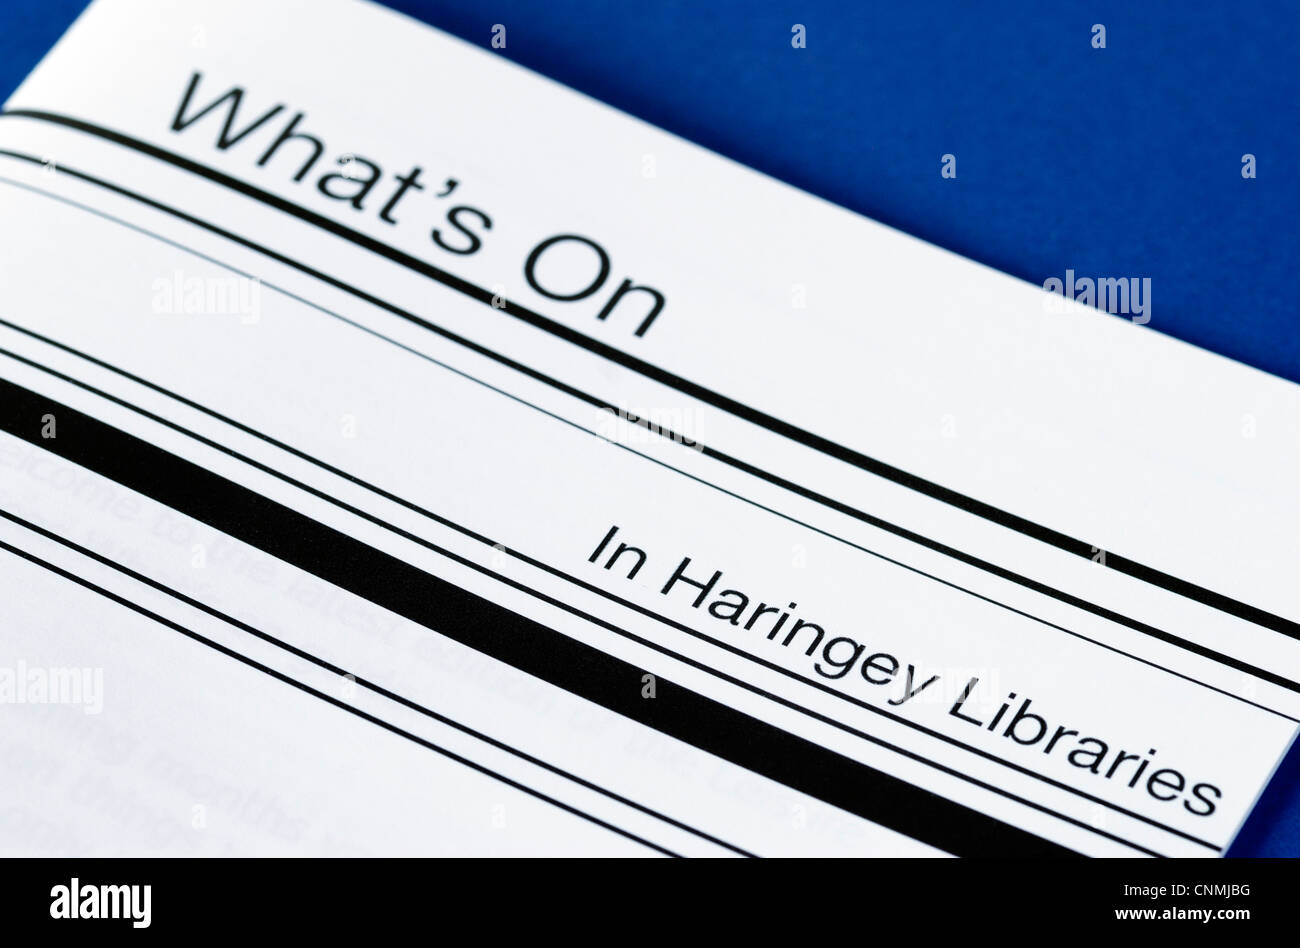 Auflisten von Aktivitäten und Veranstaltungen in den Bibliotheken, London Borough of Haringey Broschüre Stockfoto